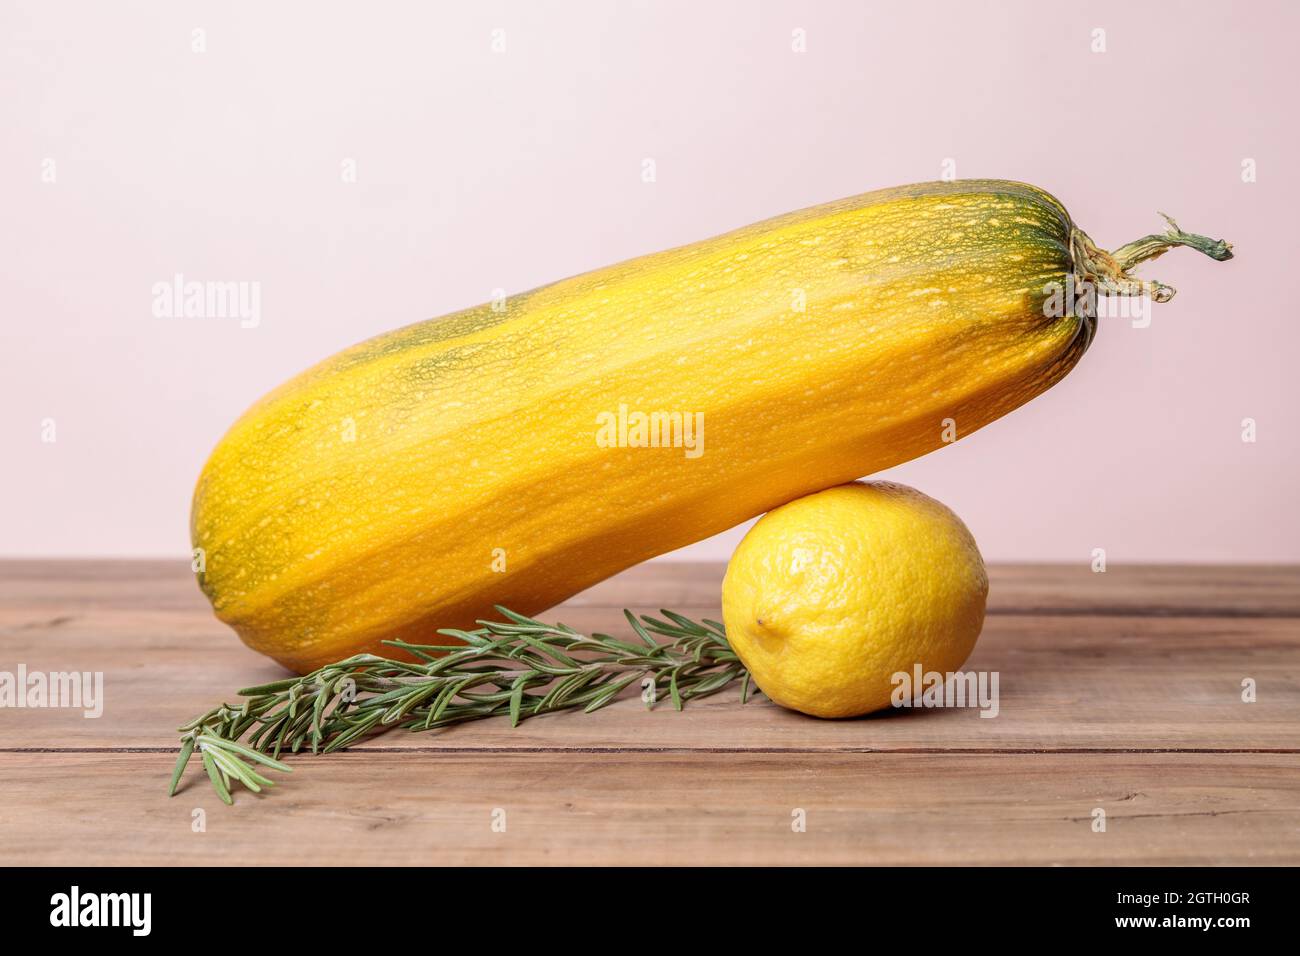 Courgettes mûres jaunes avec citron sur bois. Concept d'automne. Gros plan. Banque D'Images